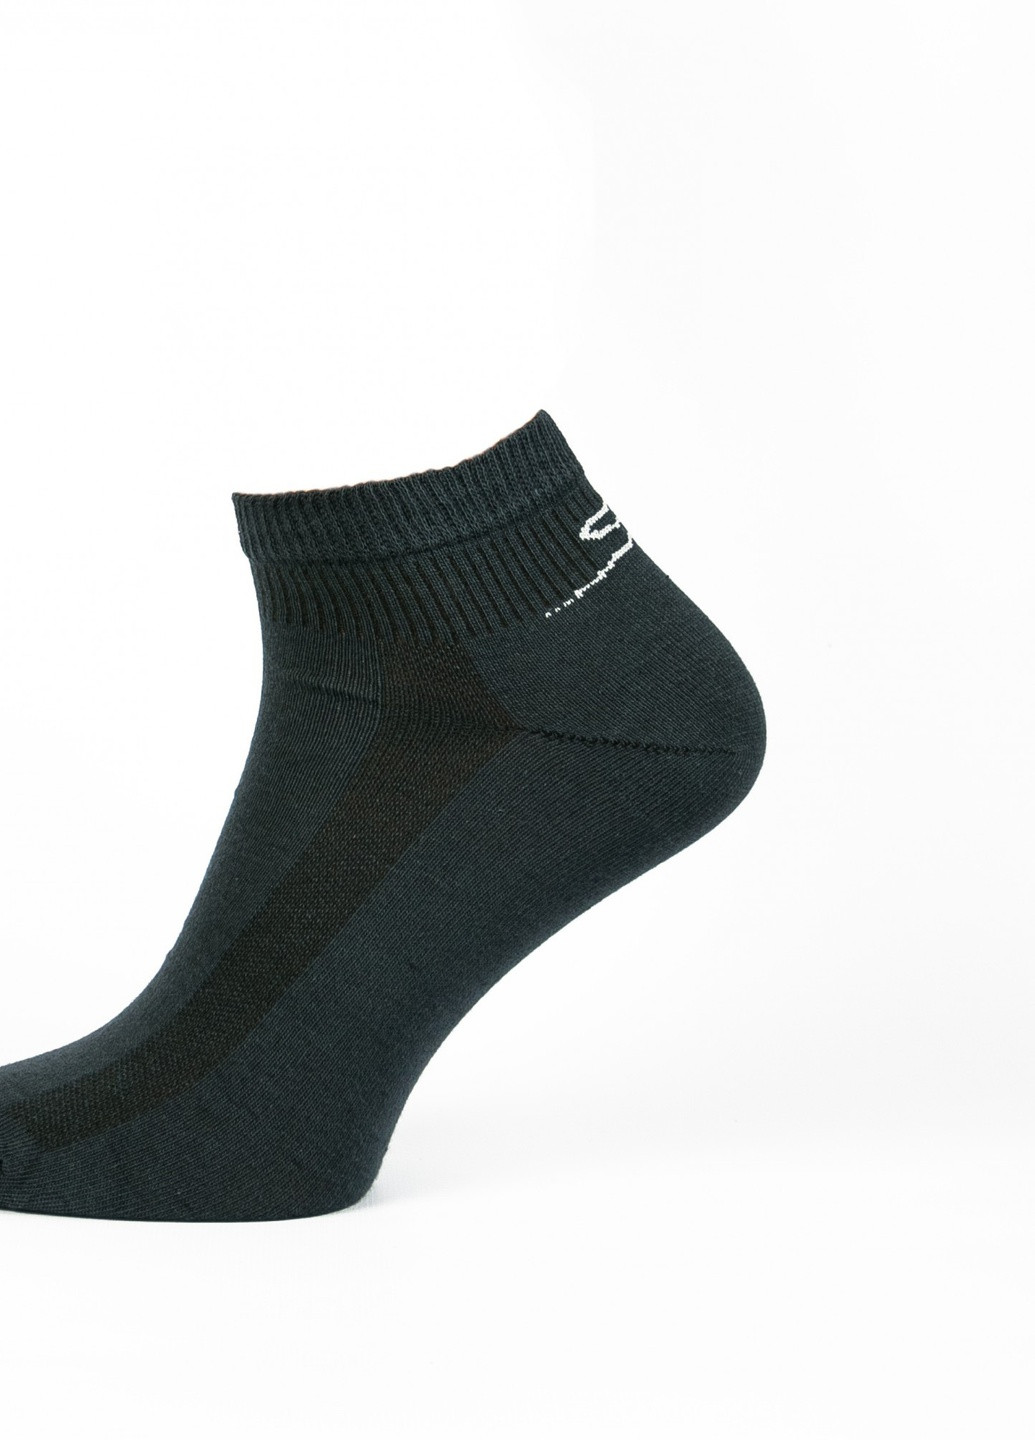 Шкарпетки Нова пара 432, спорт колір-джинс НОВА ПАРА коротка висота с уплотненным носком однотонные тёмно-серые спортивные